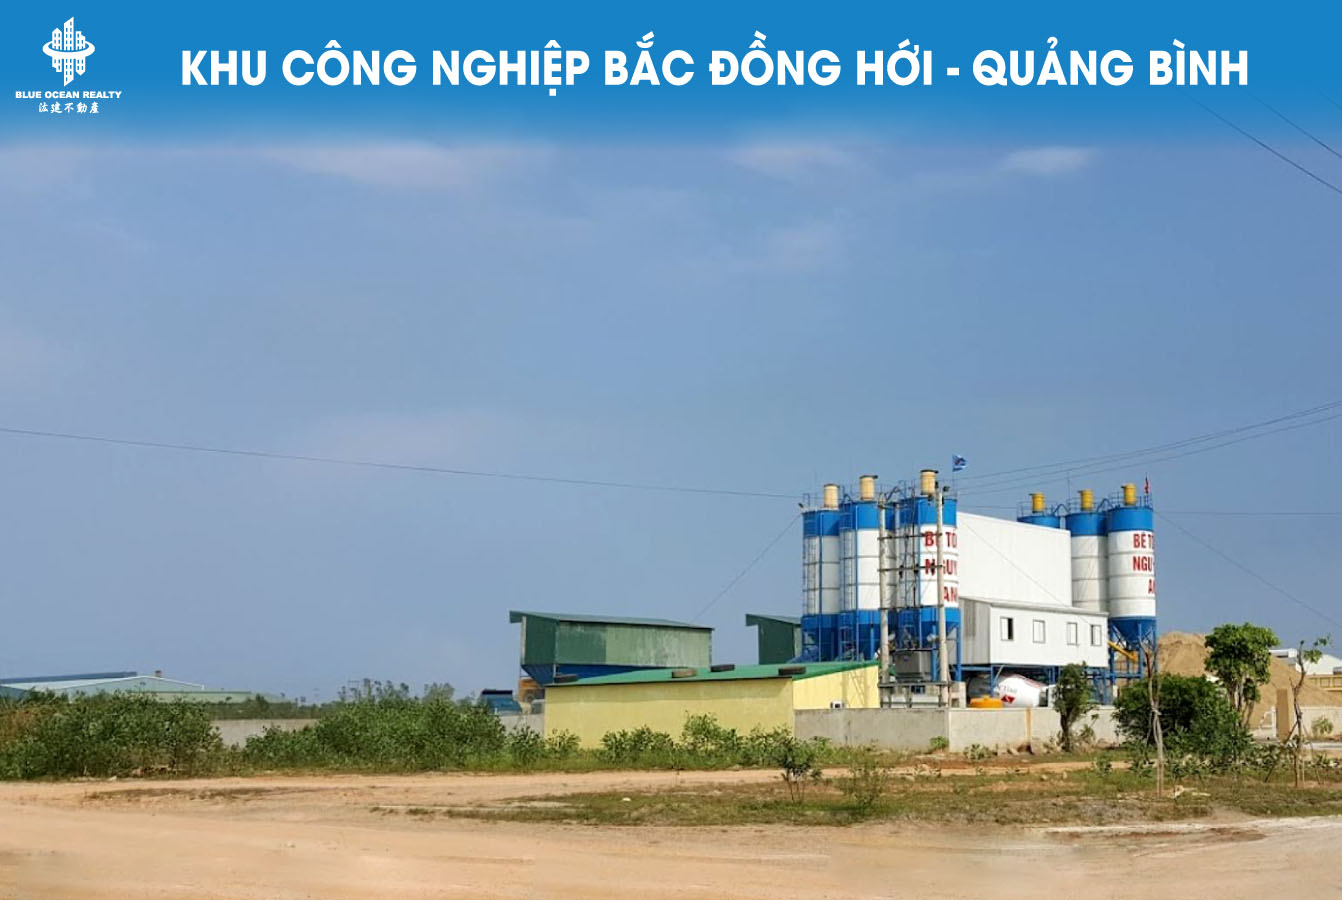 Khu công nghiệp Bắc Đồng Hới – Quảng Bình